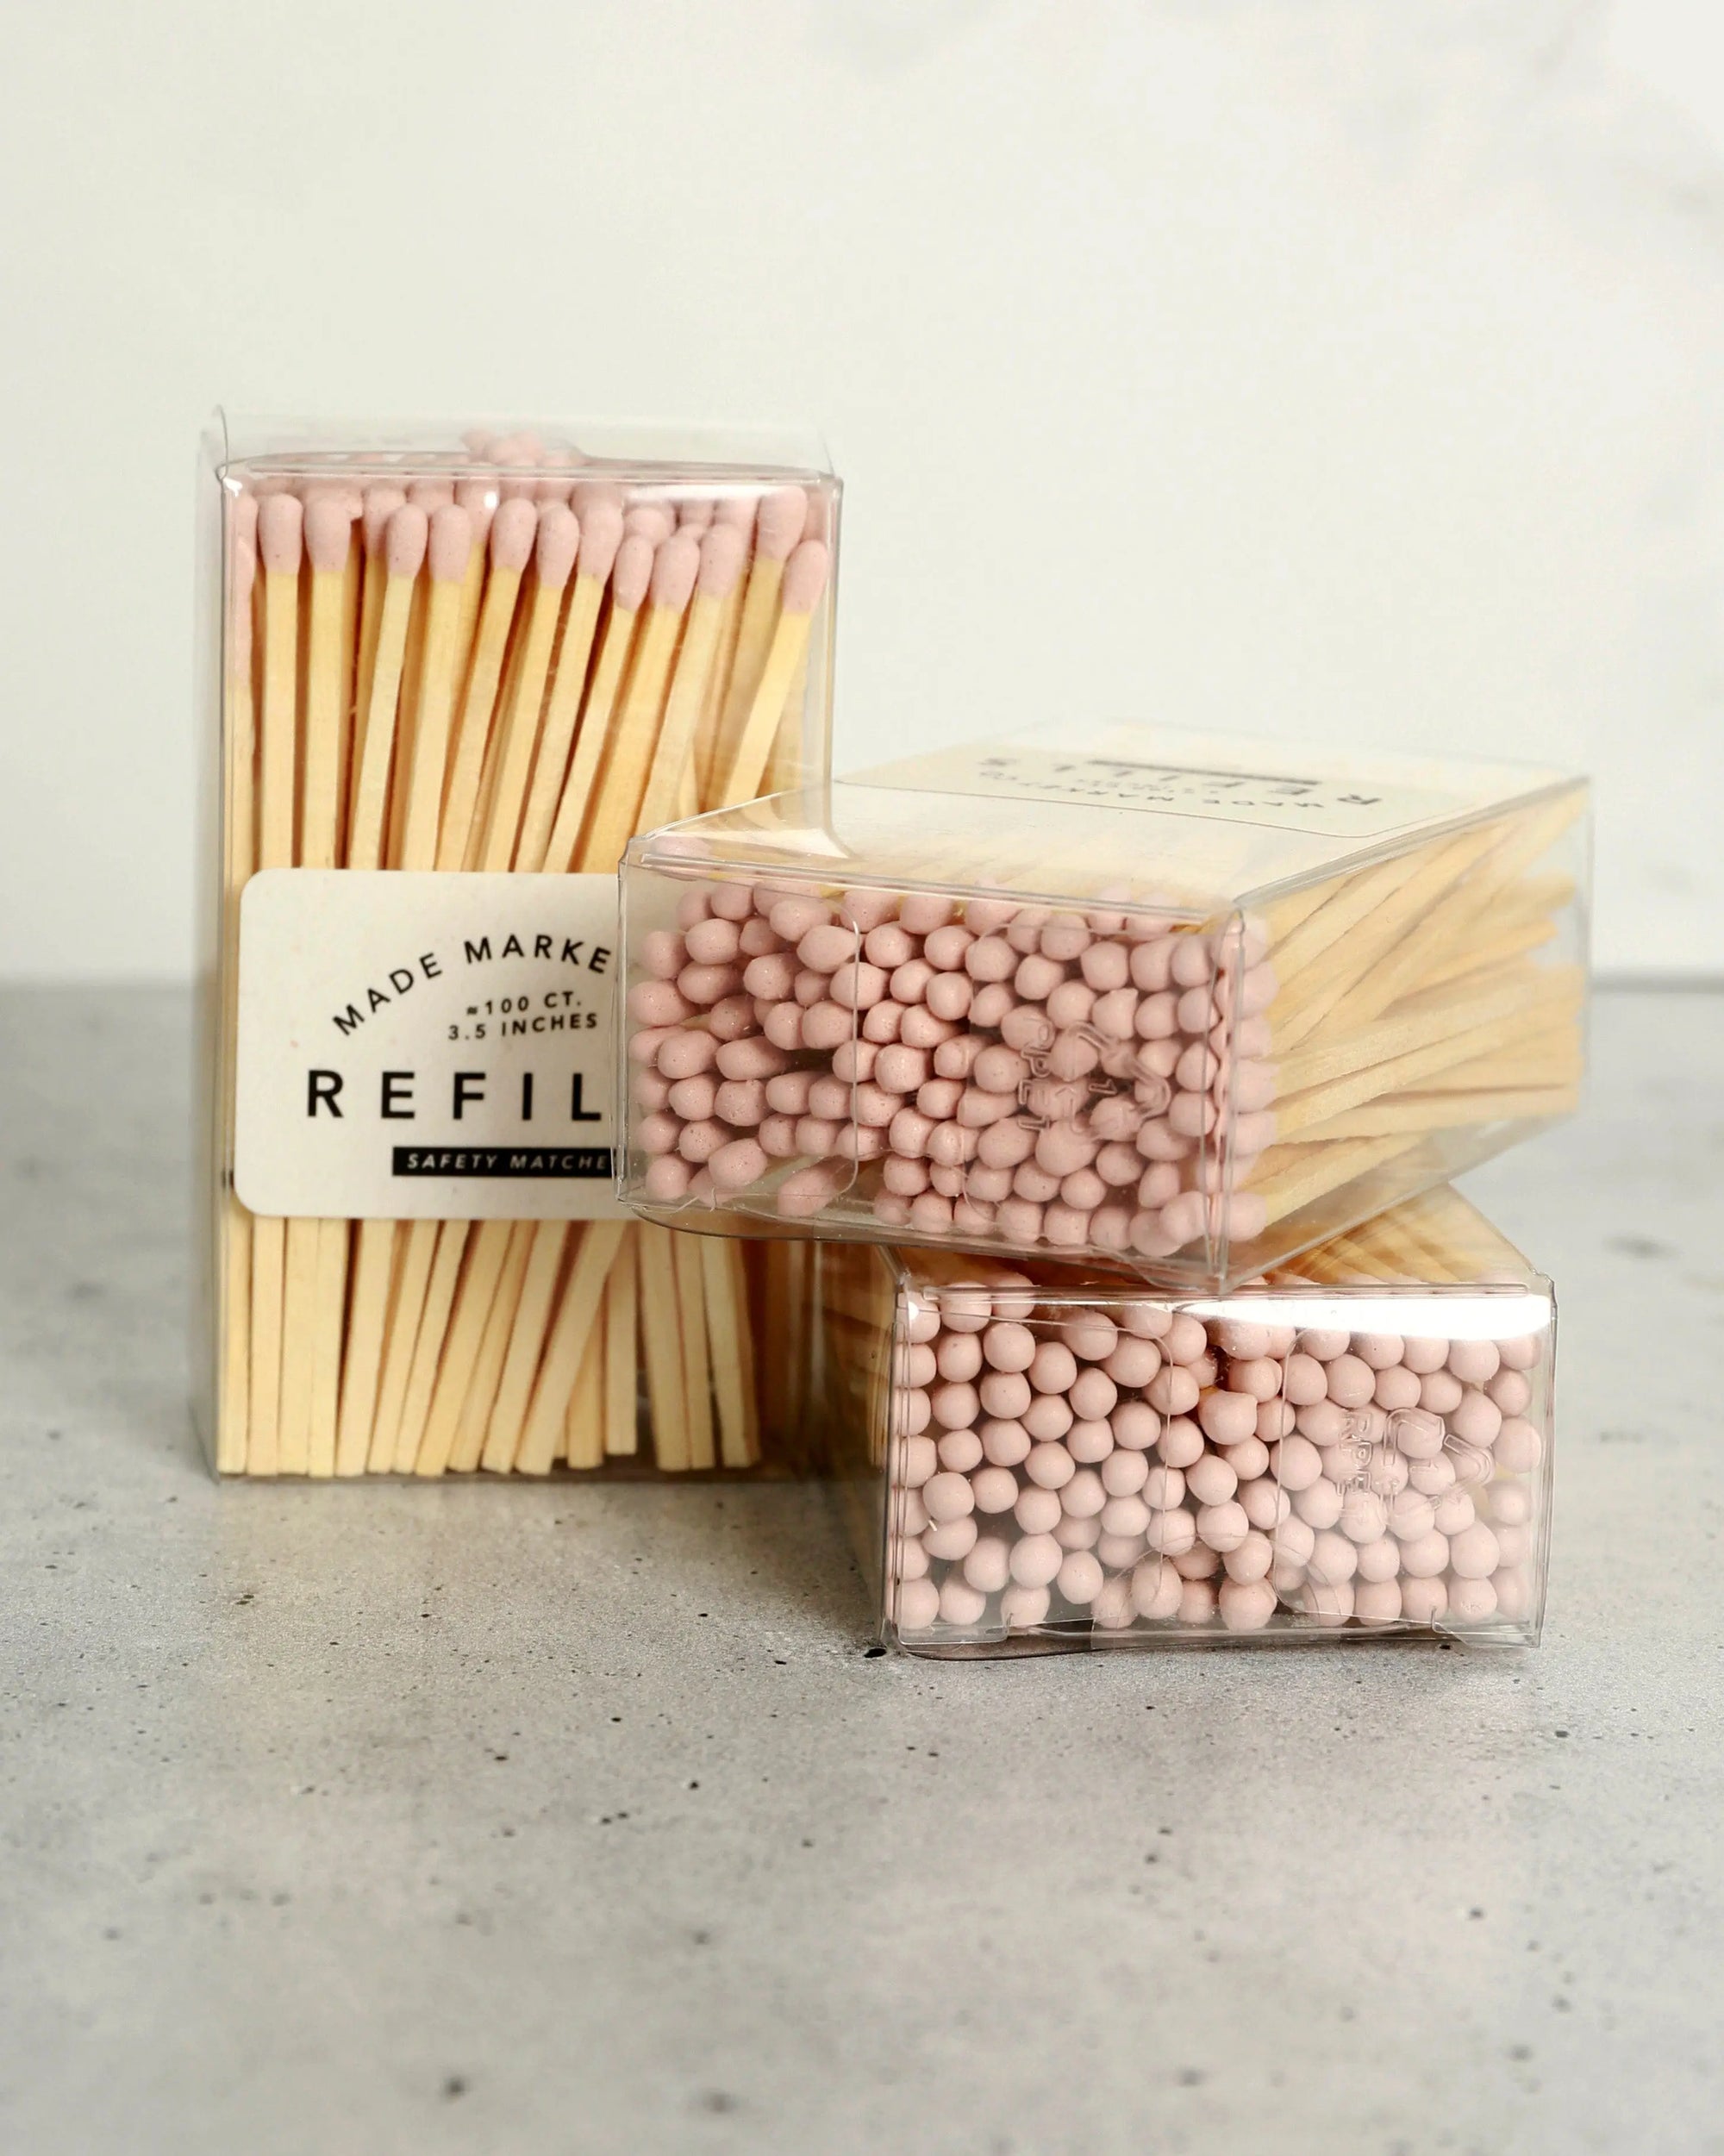 Refills of Light Pink Wooden Full of Fire Matches - Pop Of Modern